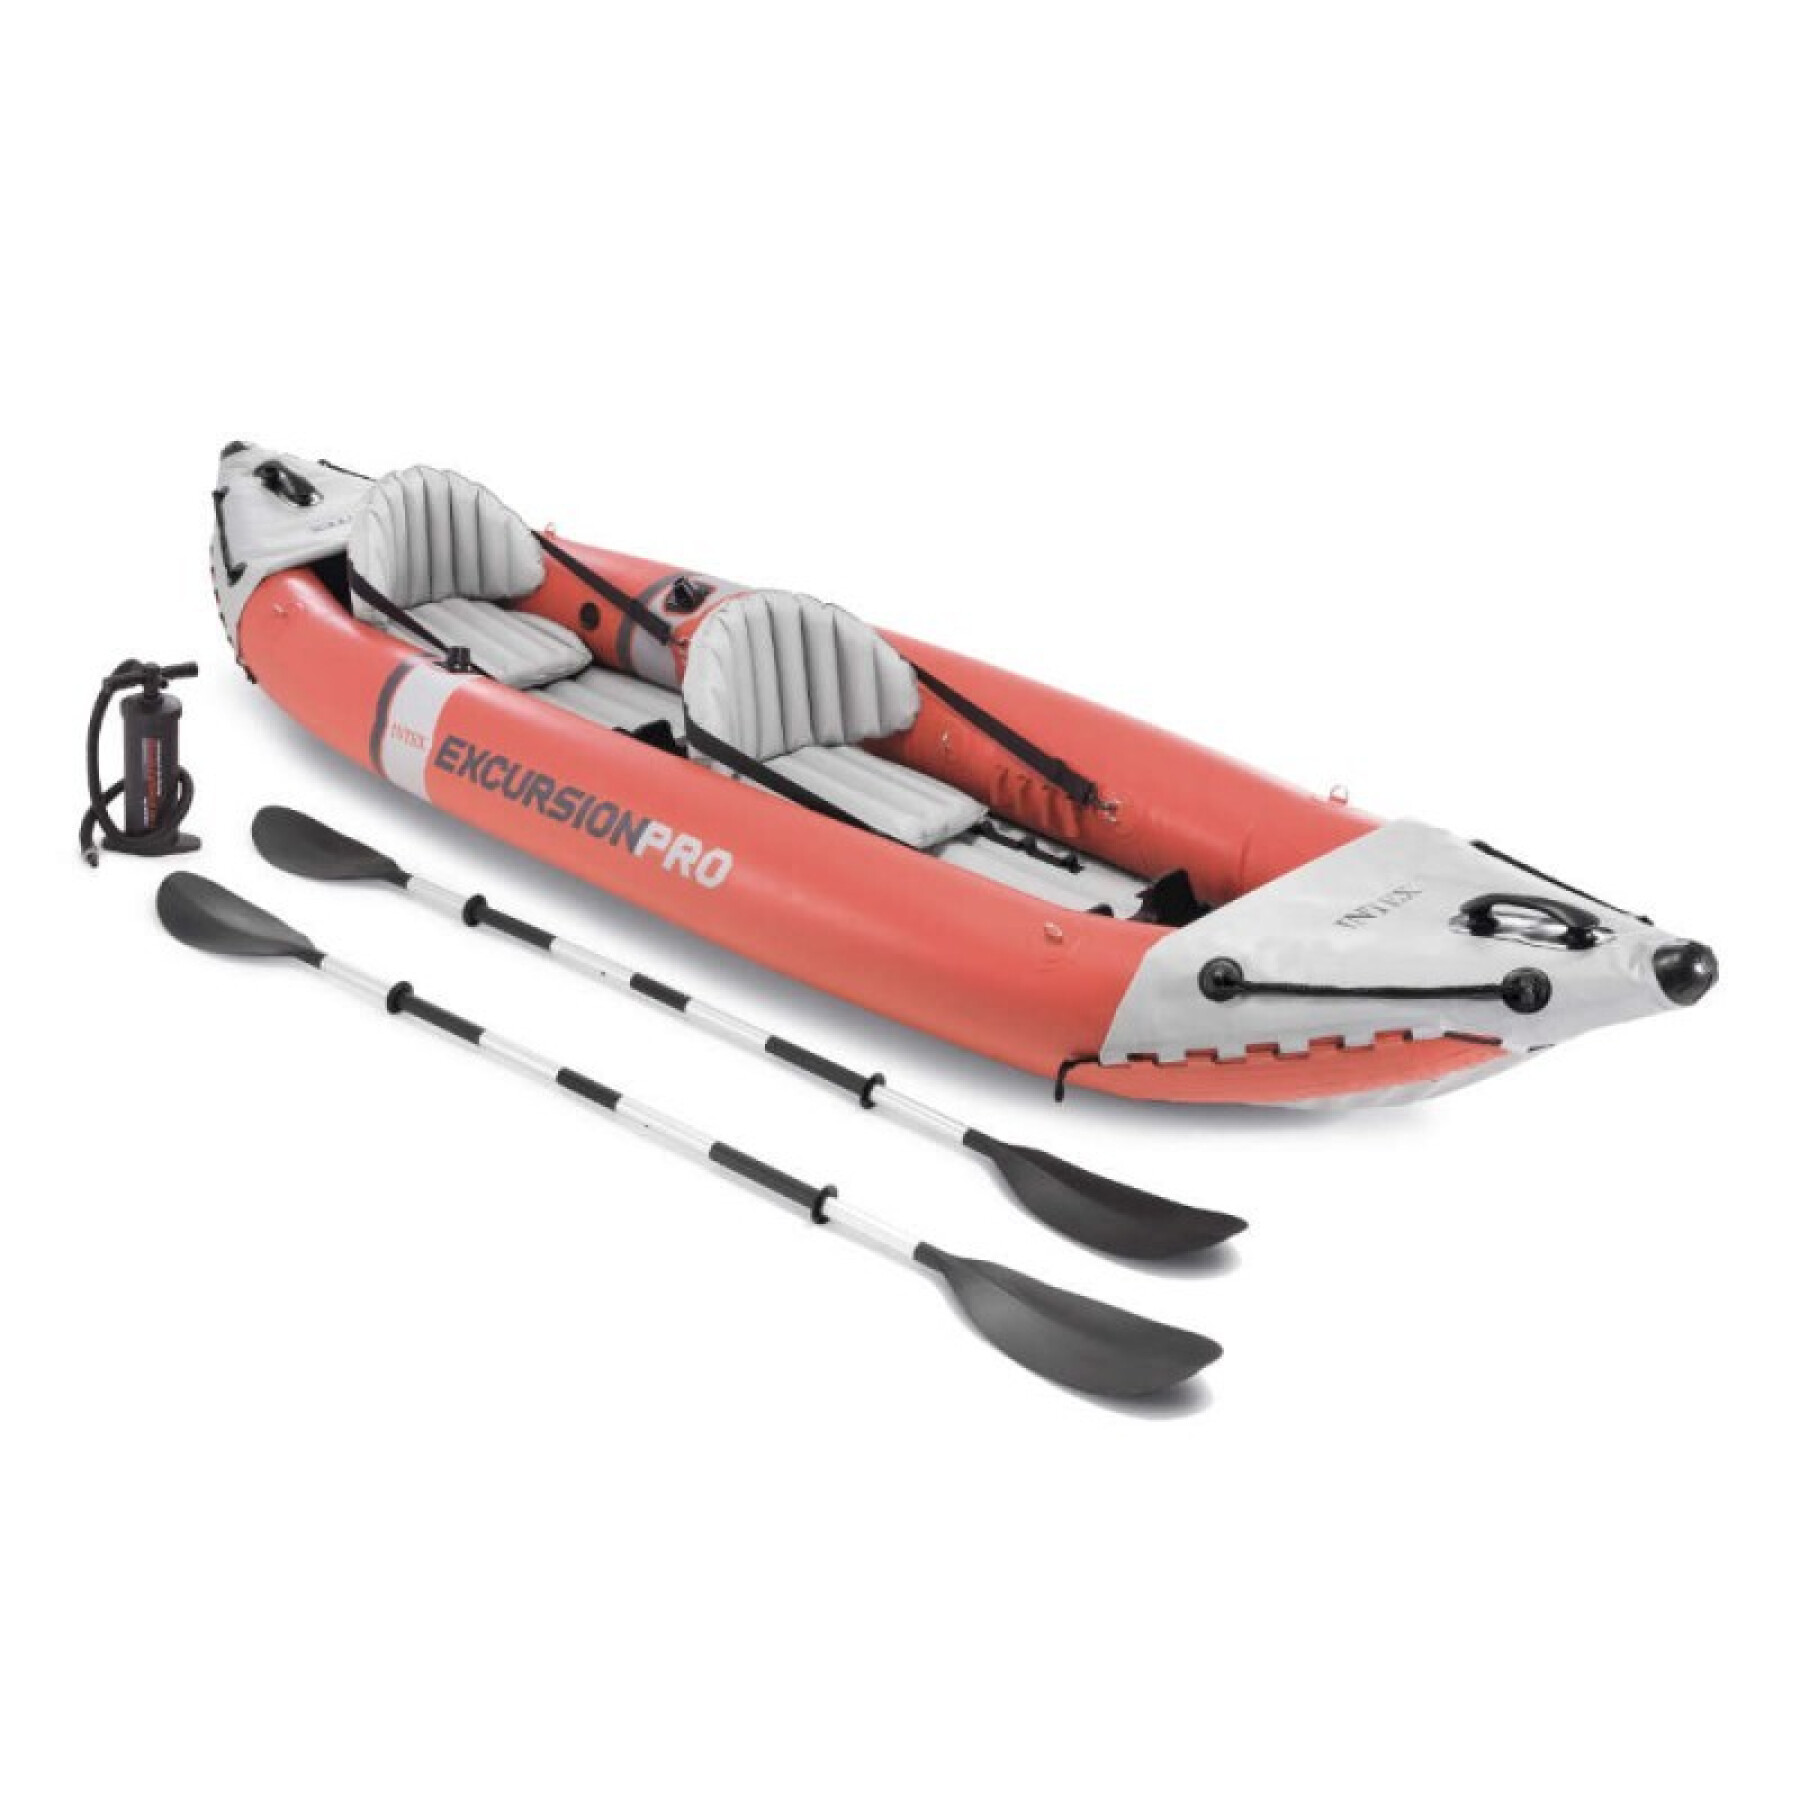 Inflatable kayak Intex Excursion Pro K2